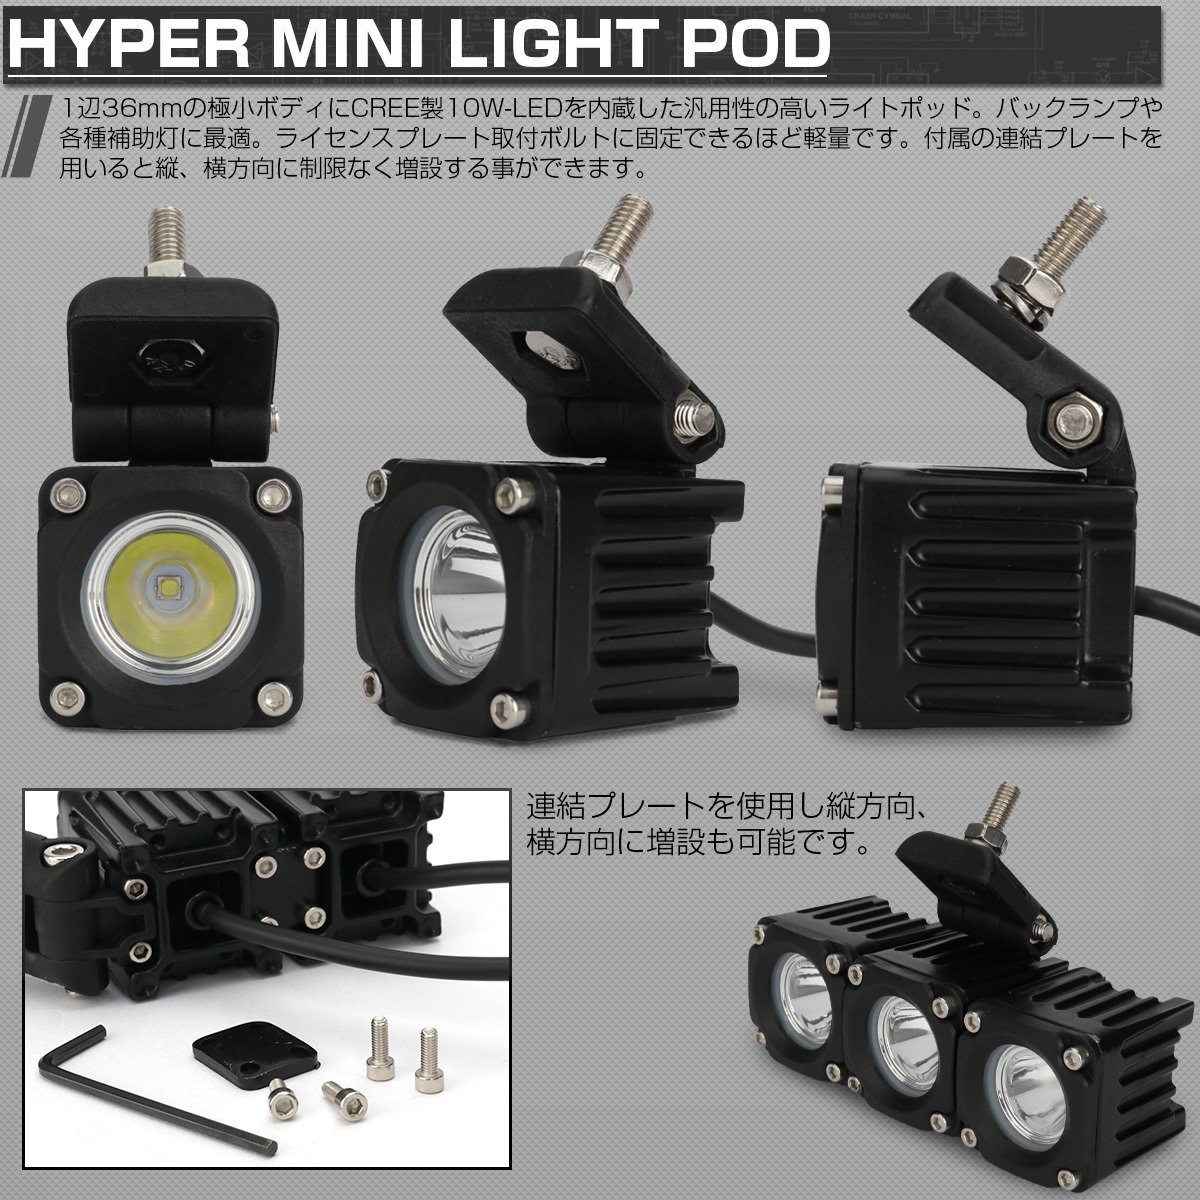 LED 作業灯 10W 超ミニ ライトポッド 12V 24V IP67 小型 軽量 スポットライト バックランプ フォグランプ P-536_画像2